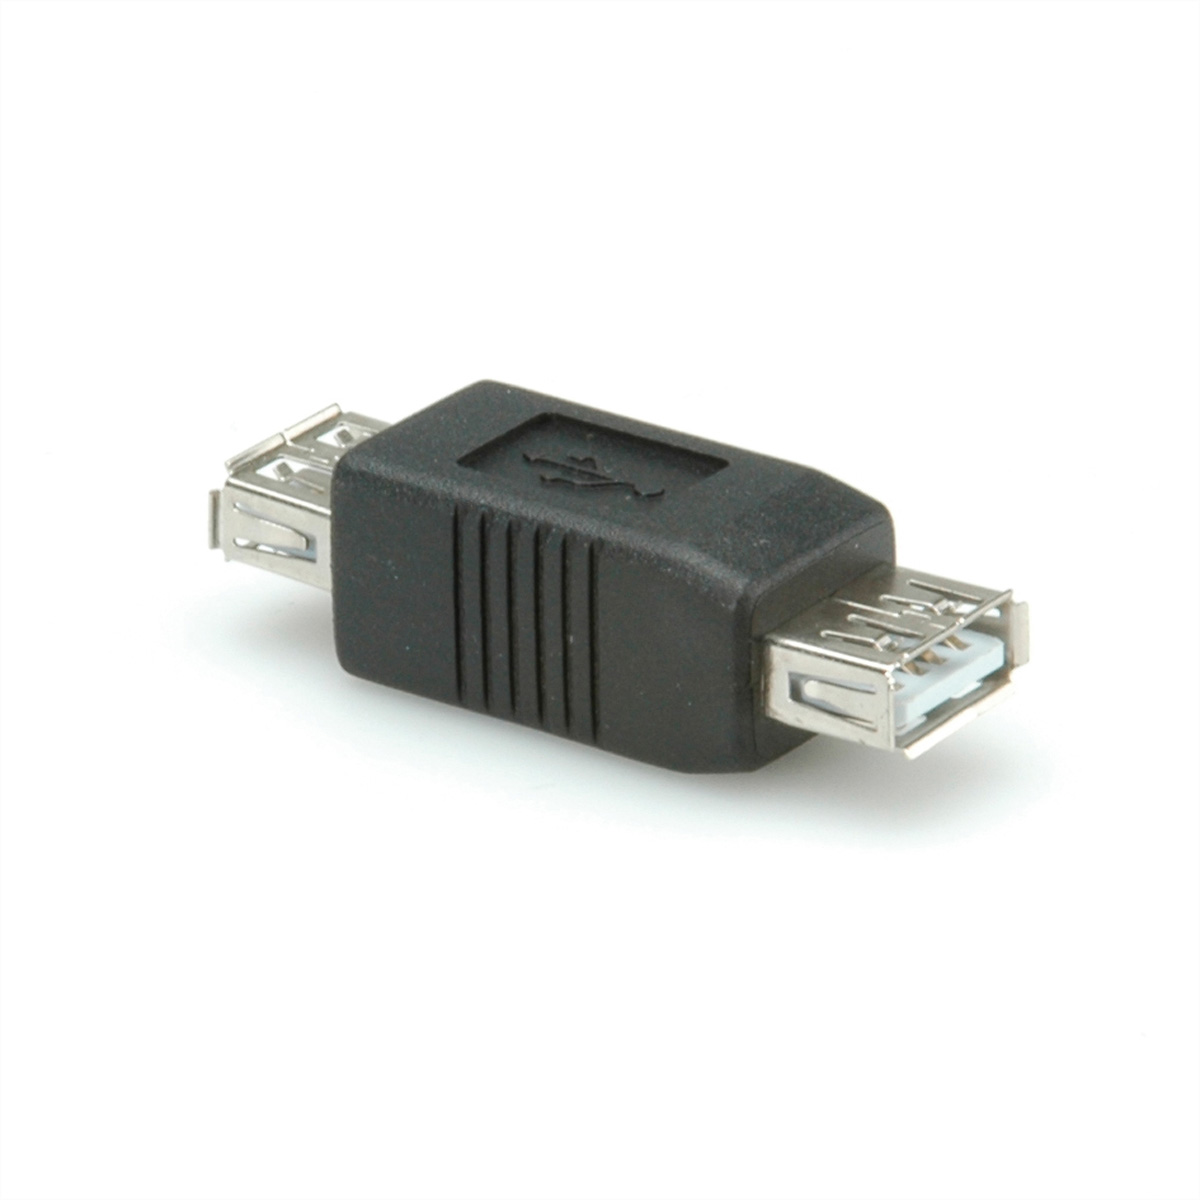 ROLINE USB 2.0 Gender USB / 2.0 A Gender Changer, BU/BU Typ Adapter Changer